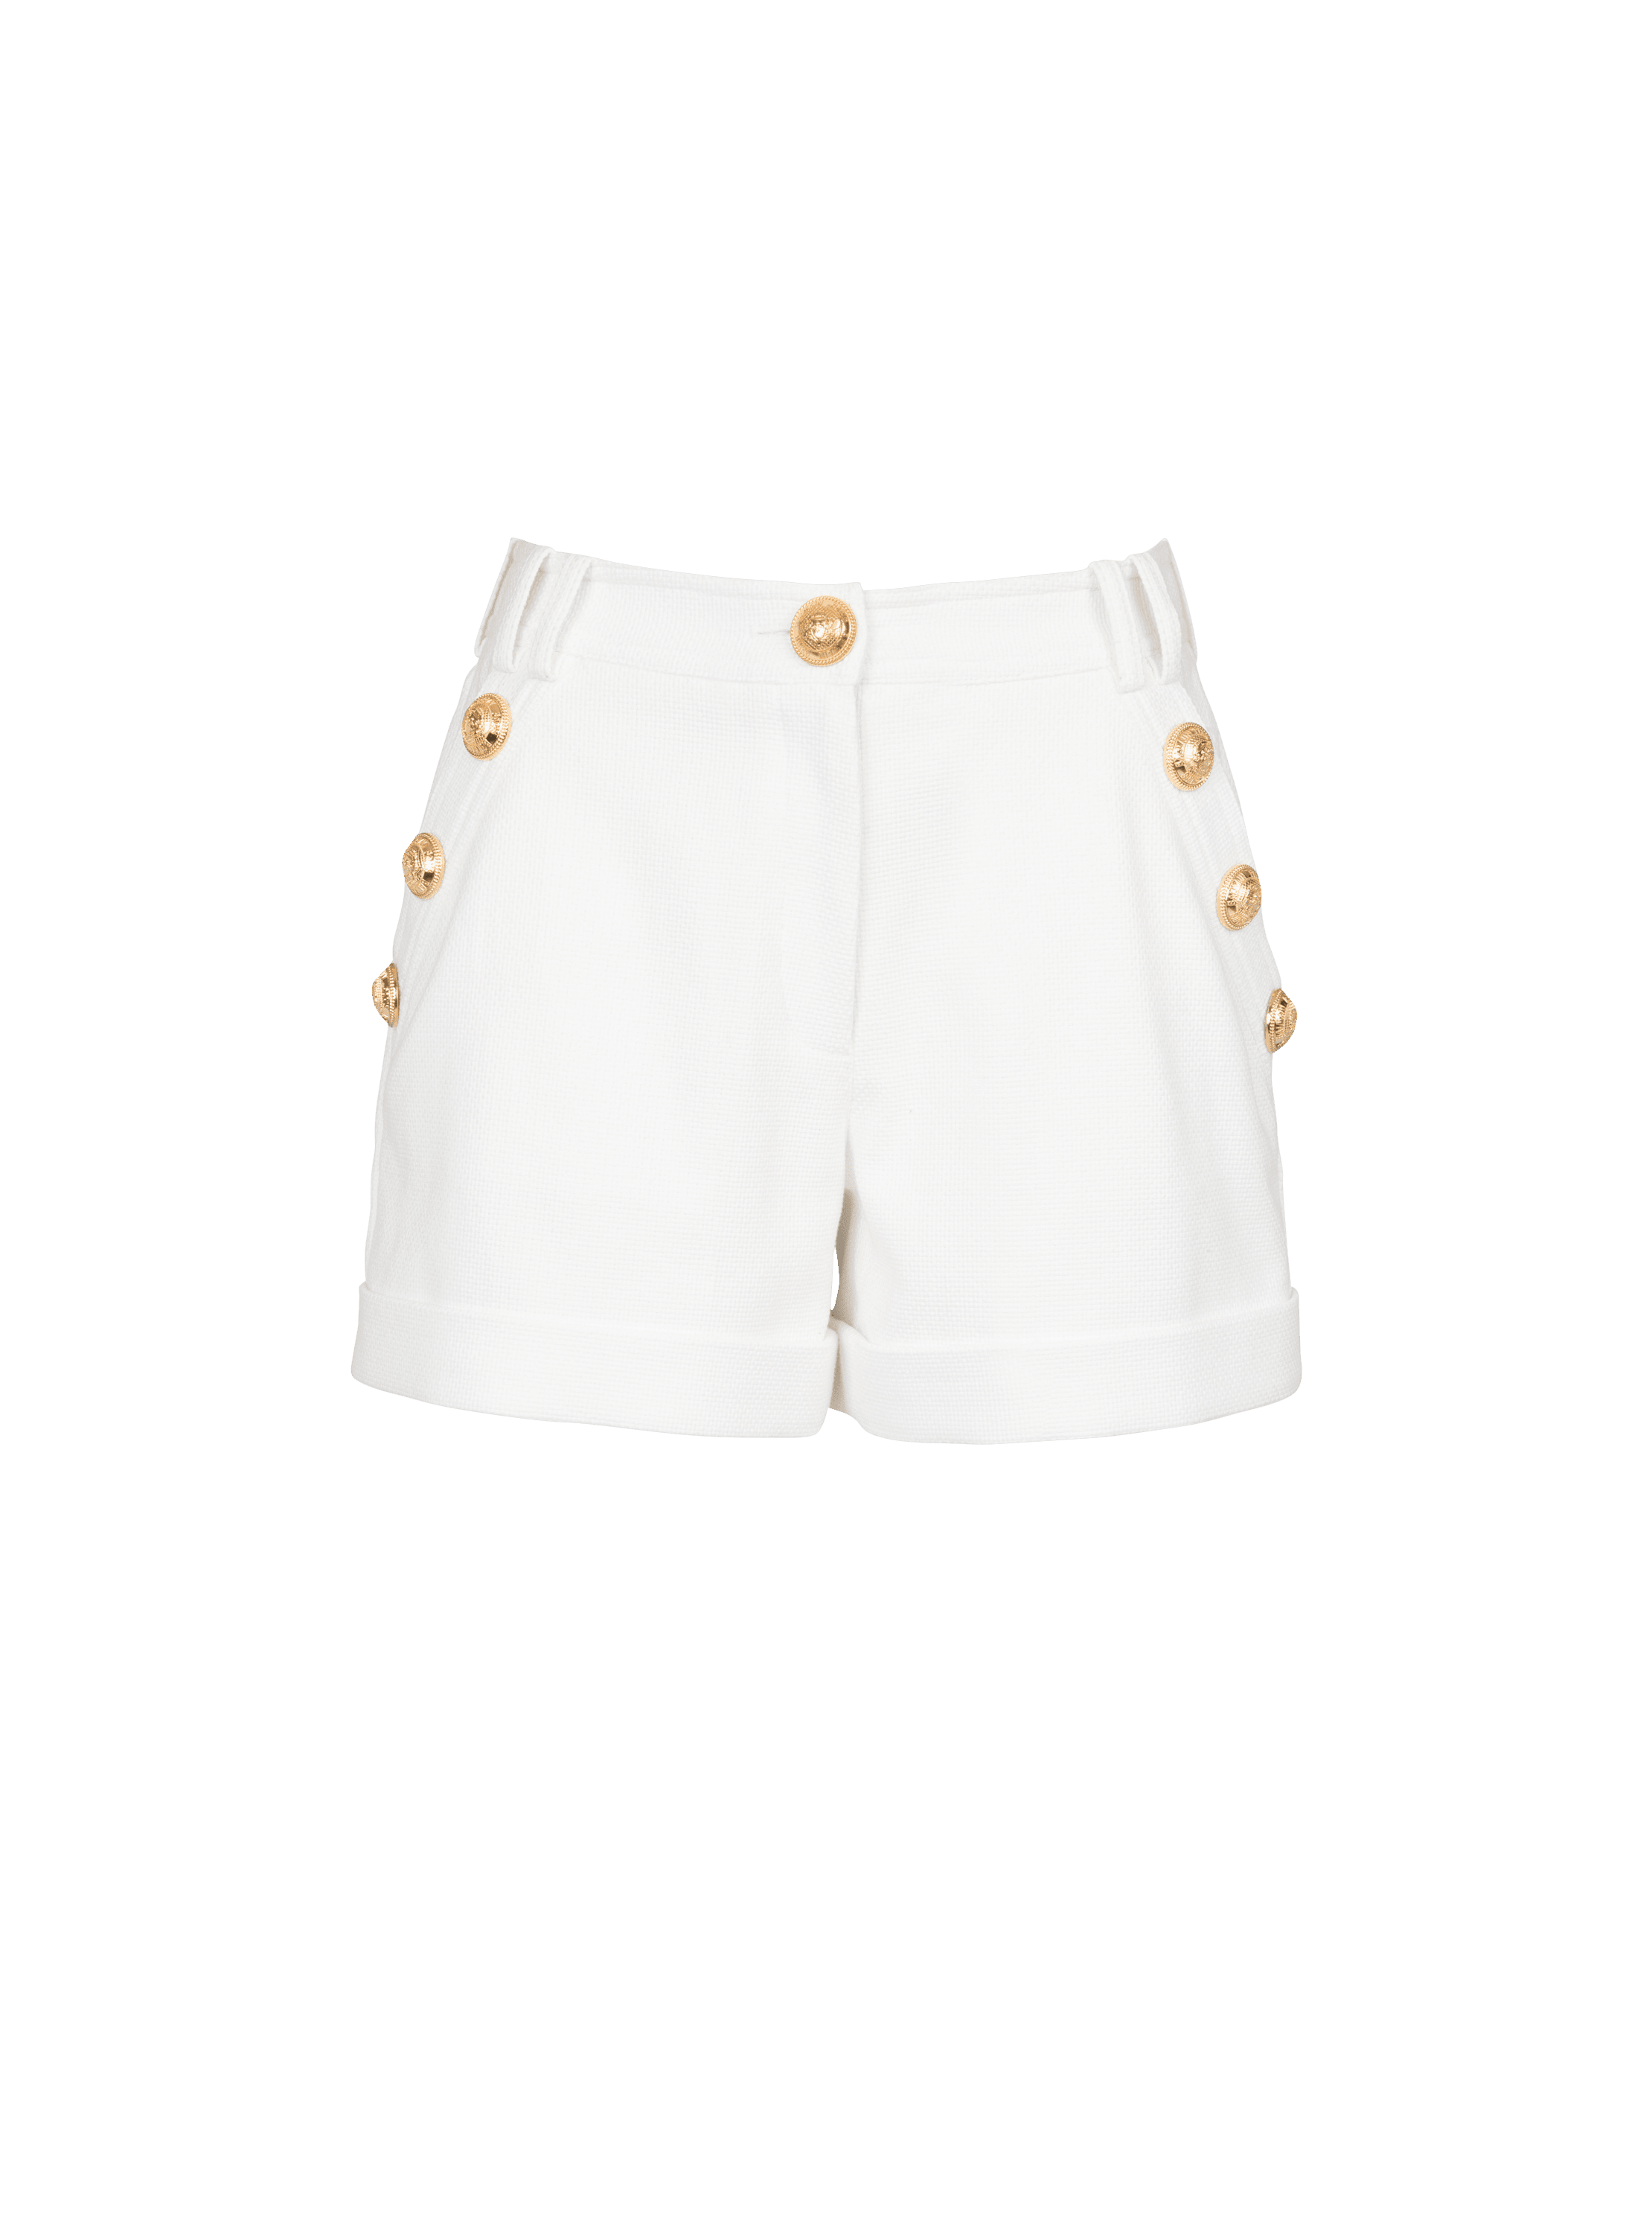 Cotton low-rise shorts, white, hi-res